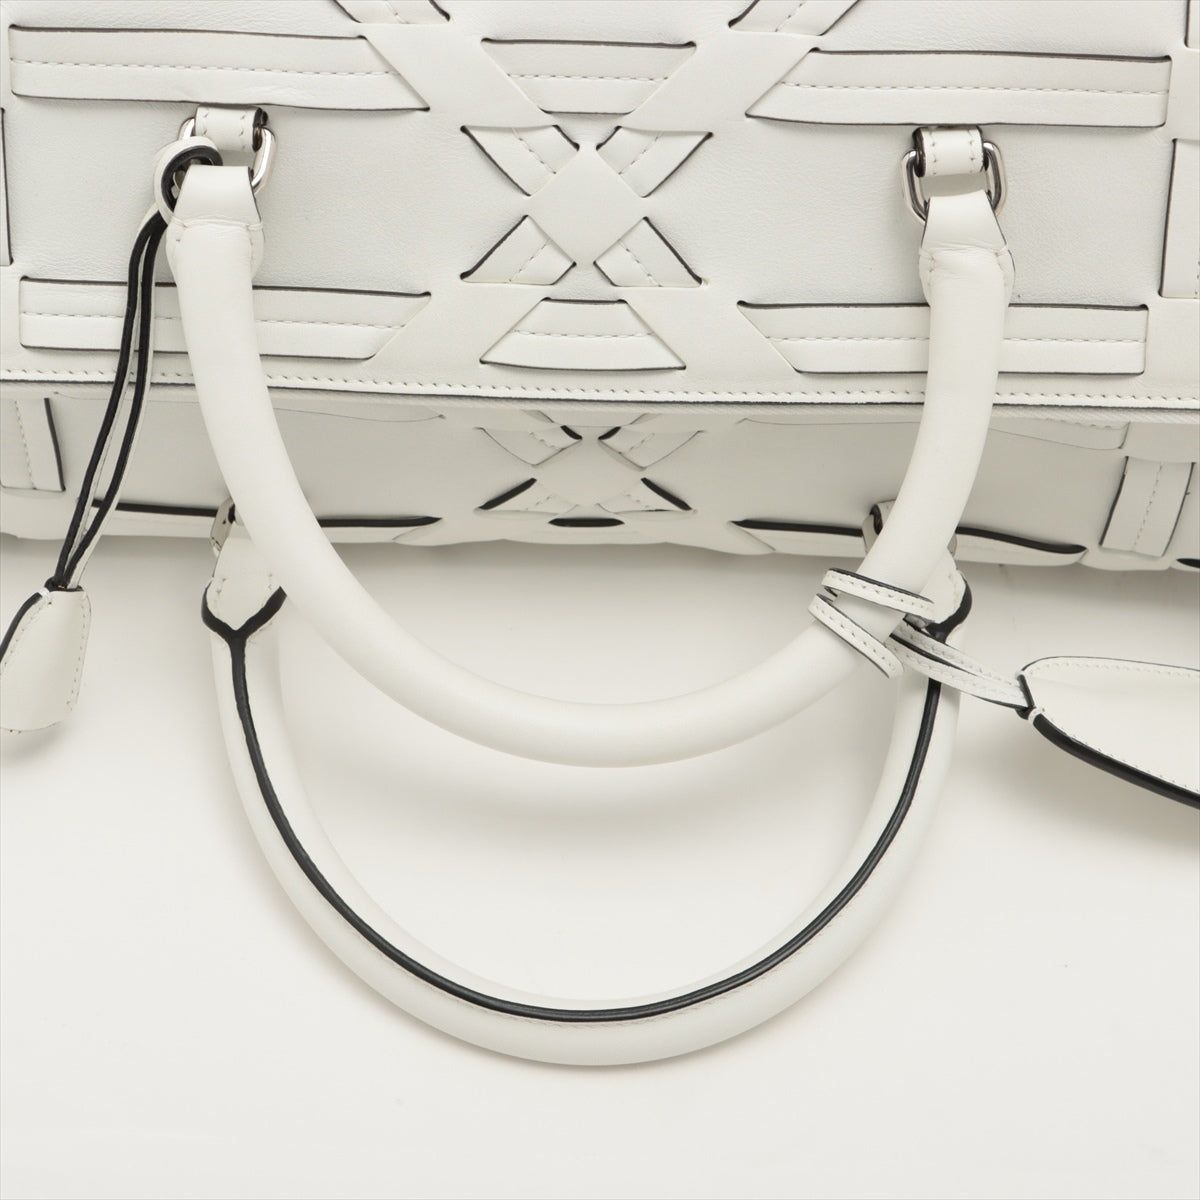 Christian Dior Leather Boston bag White